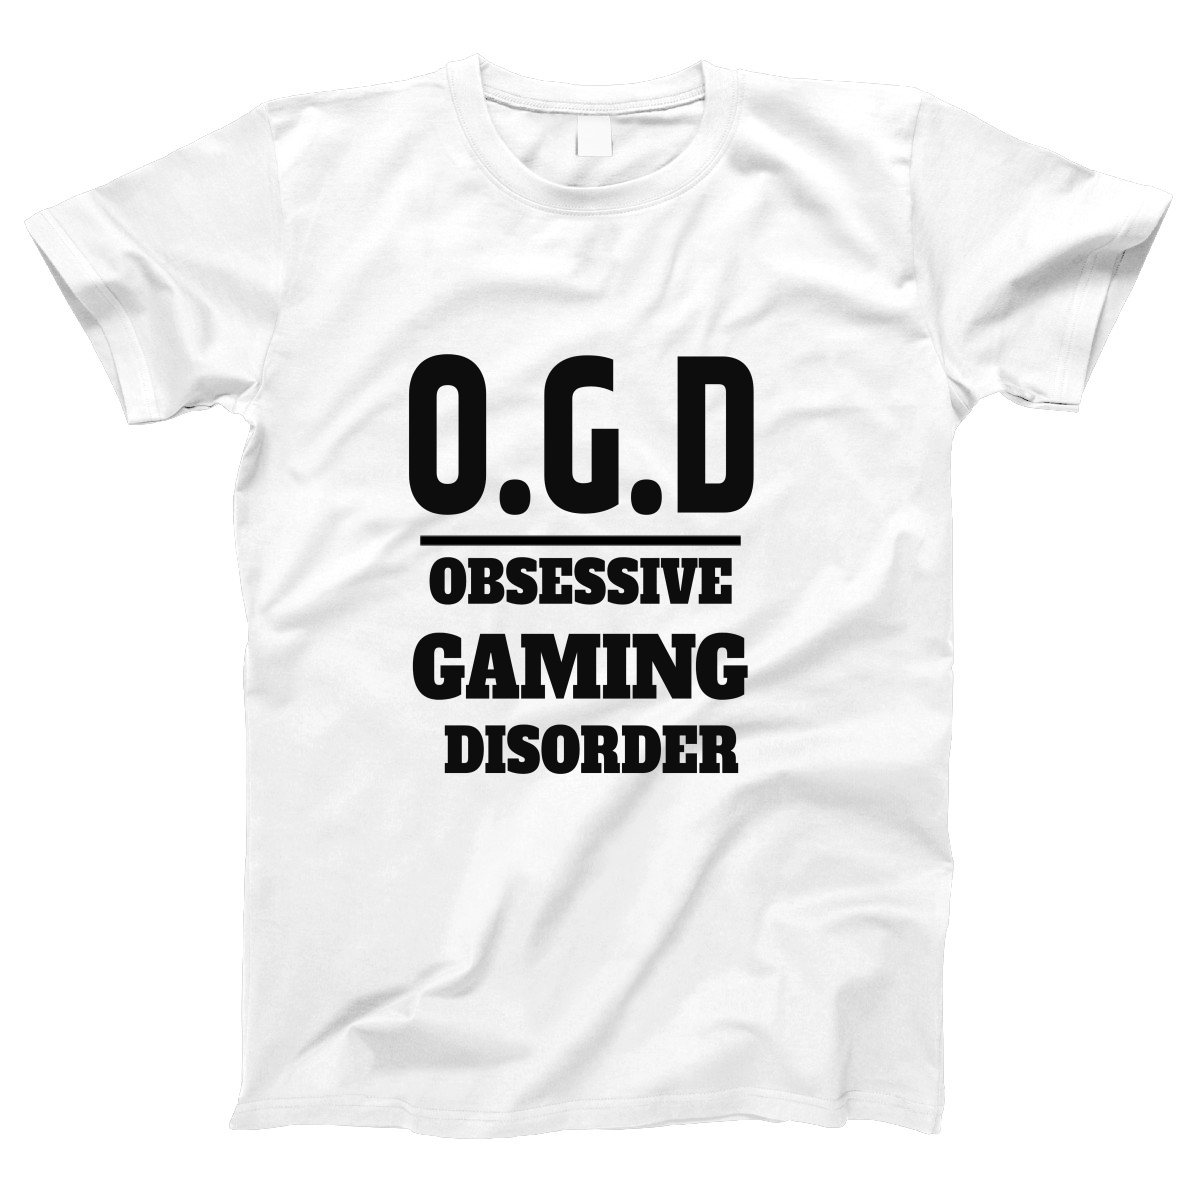 O.G.D Obsessive Gaming Disorder Women's T-shirt | White